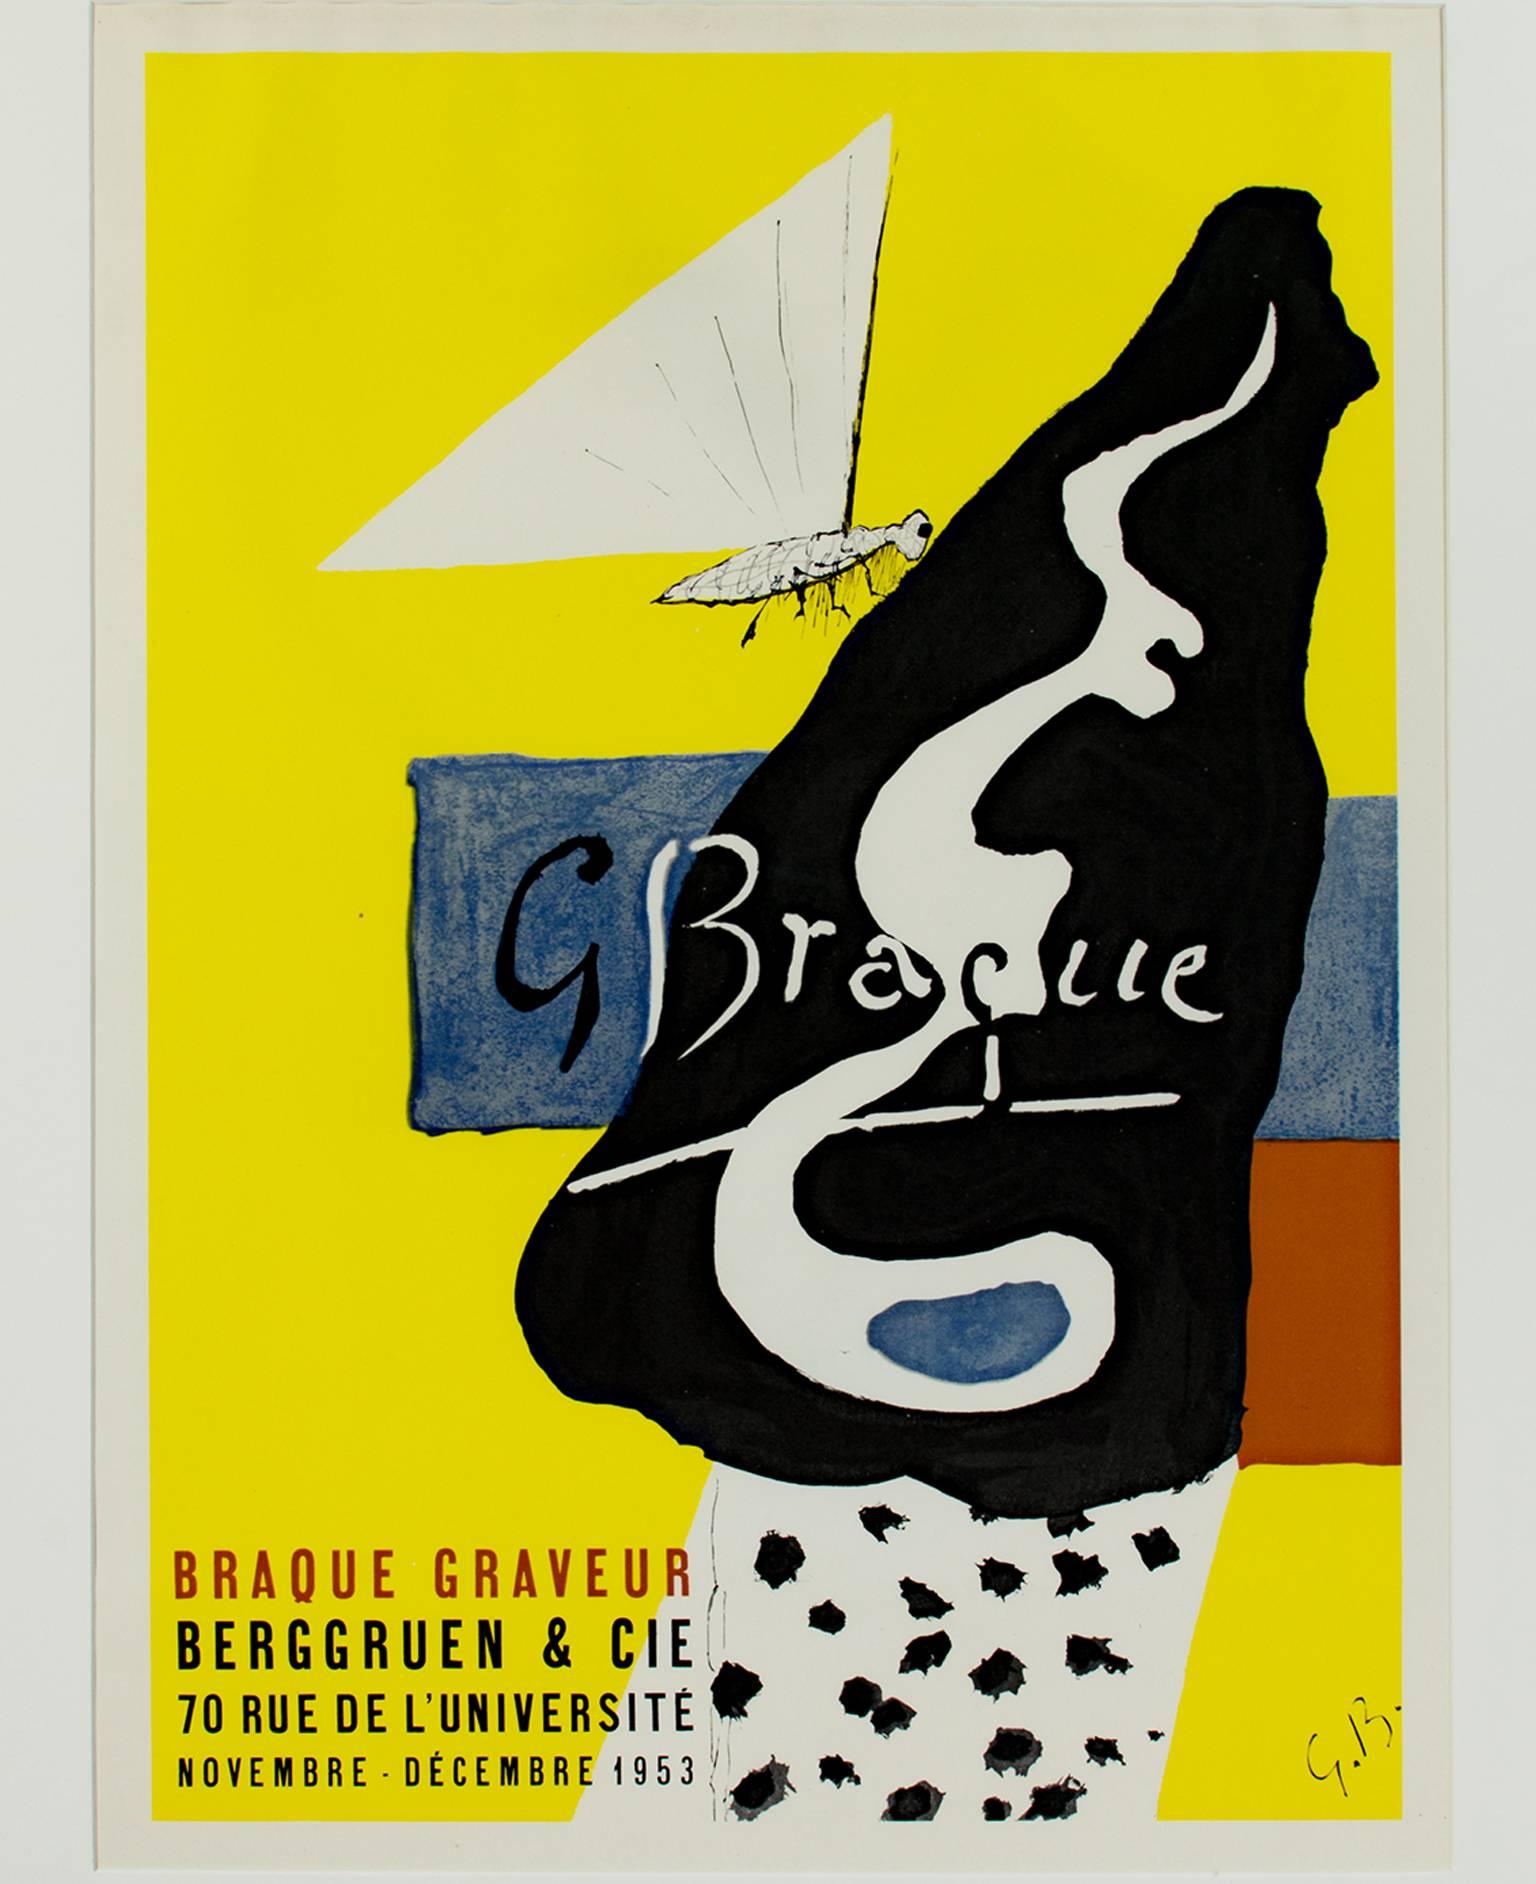 "Braque Graveur" ist ein Original-Farblithografie-Poster, das vom Künstler Georges Braque mit seinen Initialen signiert wurde. Es zeigt einen Nachtfalter oder Schmetterling, der auf einer schwarzen abstrakten Form gelandet ist. Es gibt auch blaue